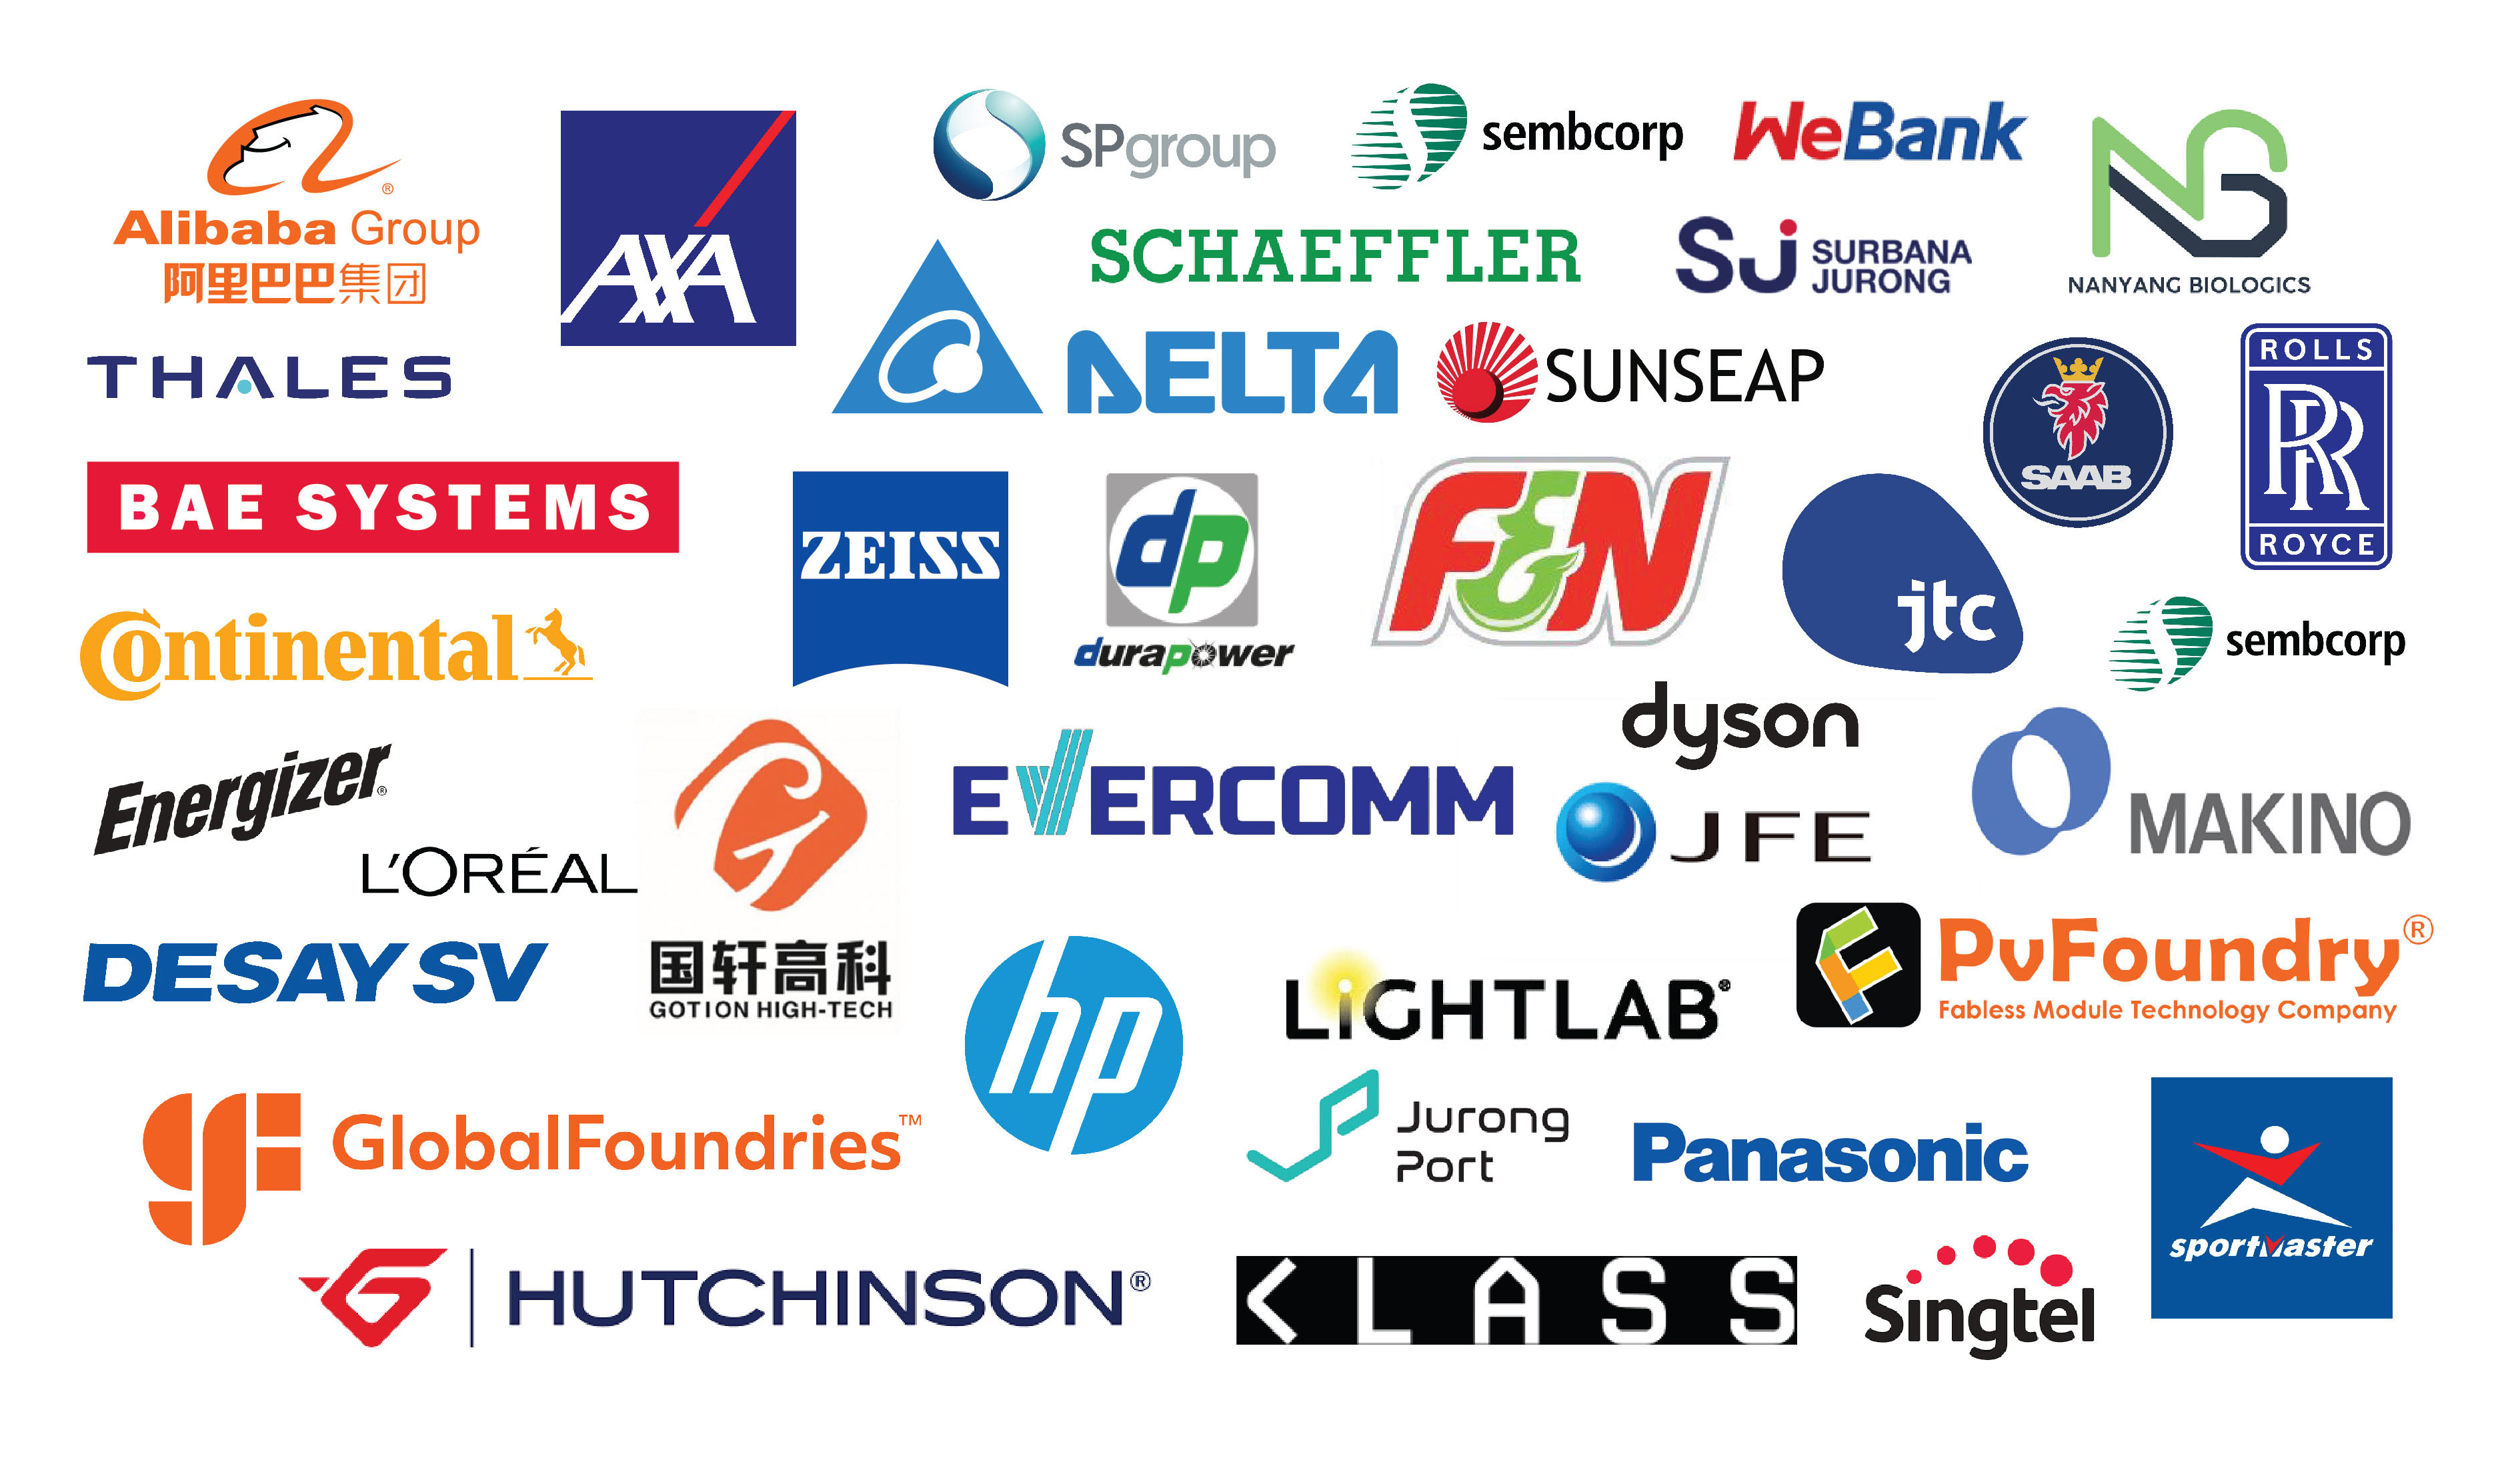 NTU industry partners